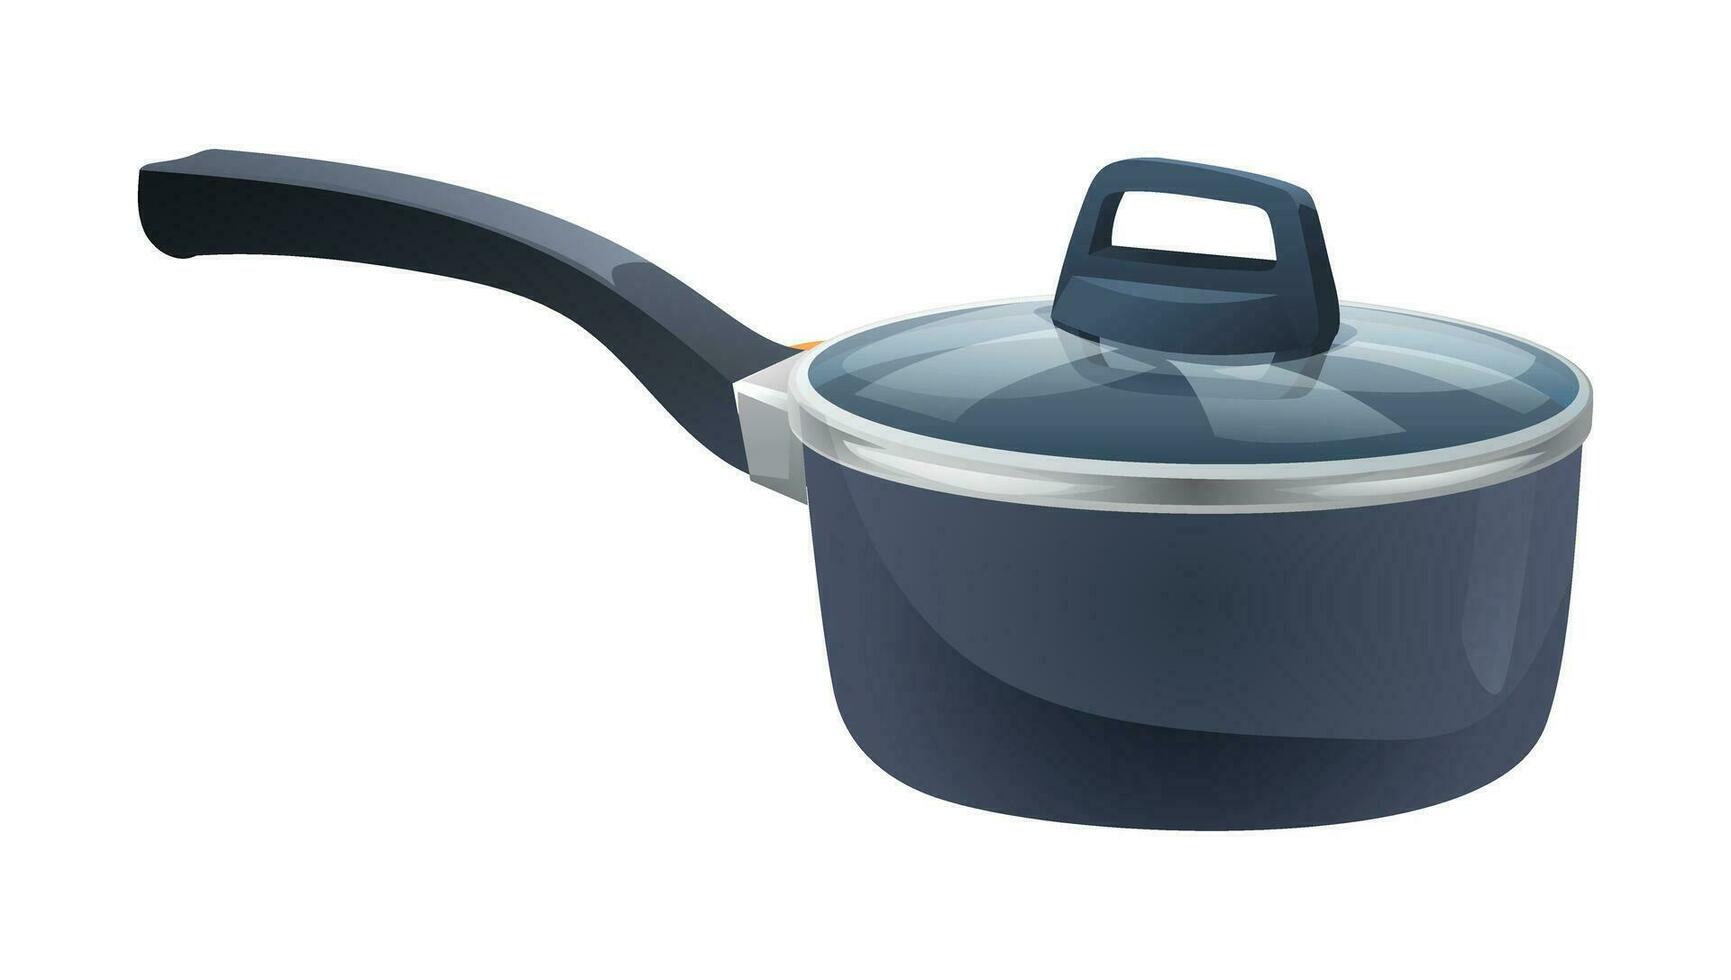 Saucepan vector isolated on white background. Pan kitchenware cartoon illustration